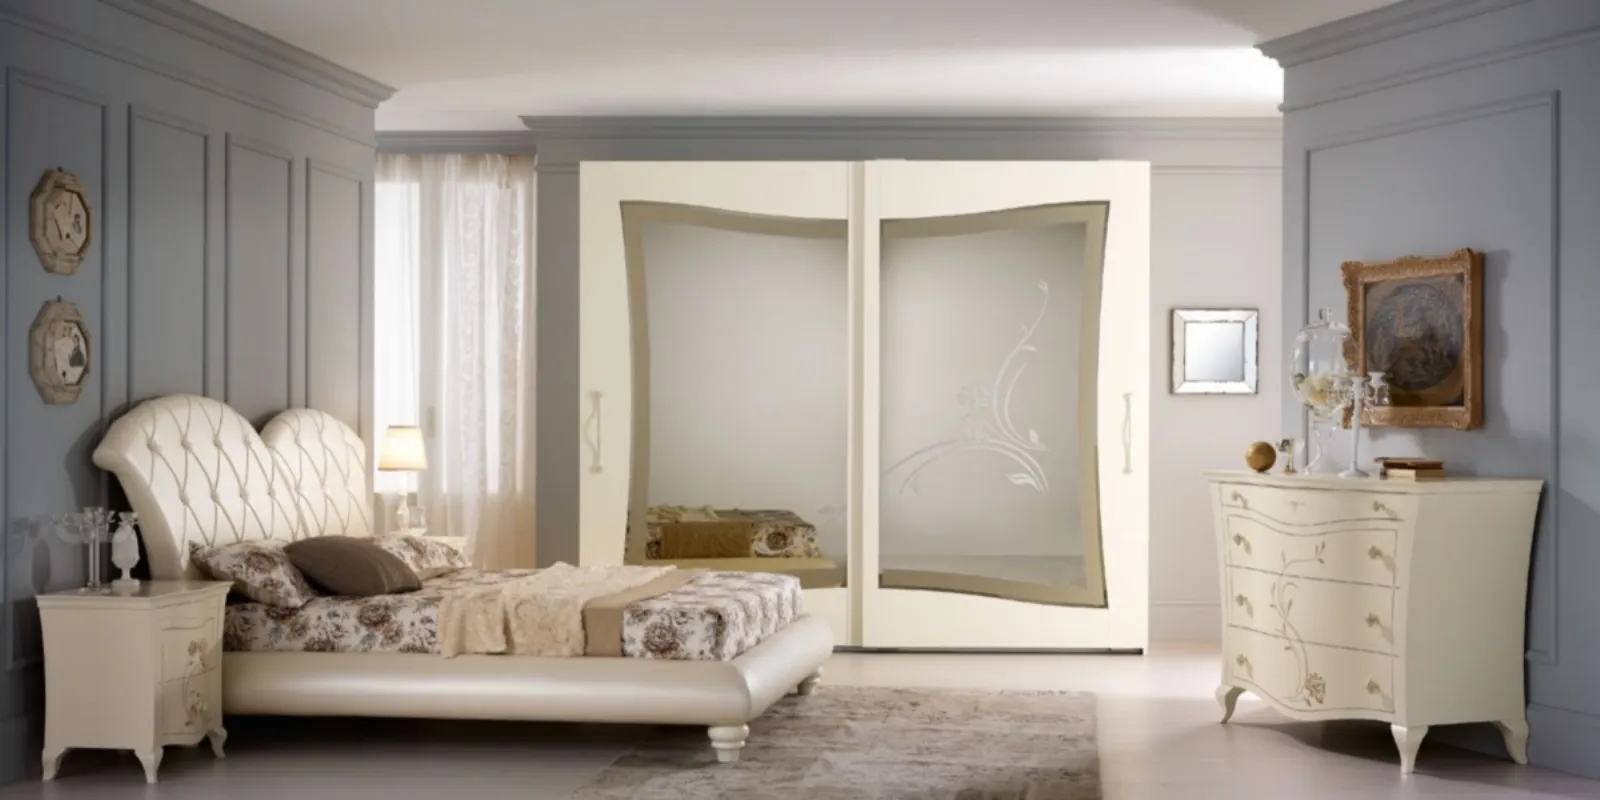 Camere da letto matrimoniali classiche camere da letto for Stile contemporaneo mobili